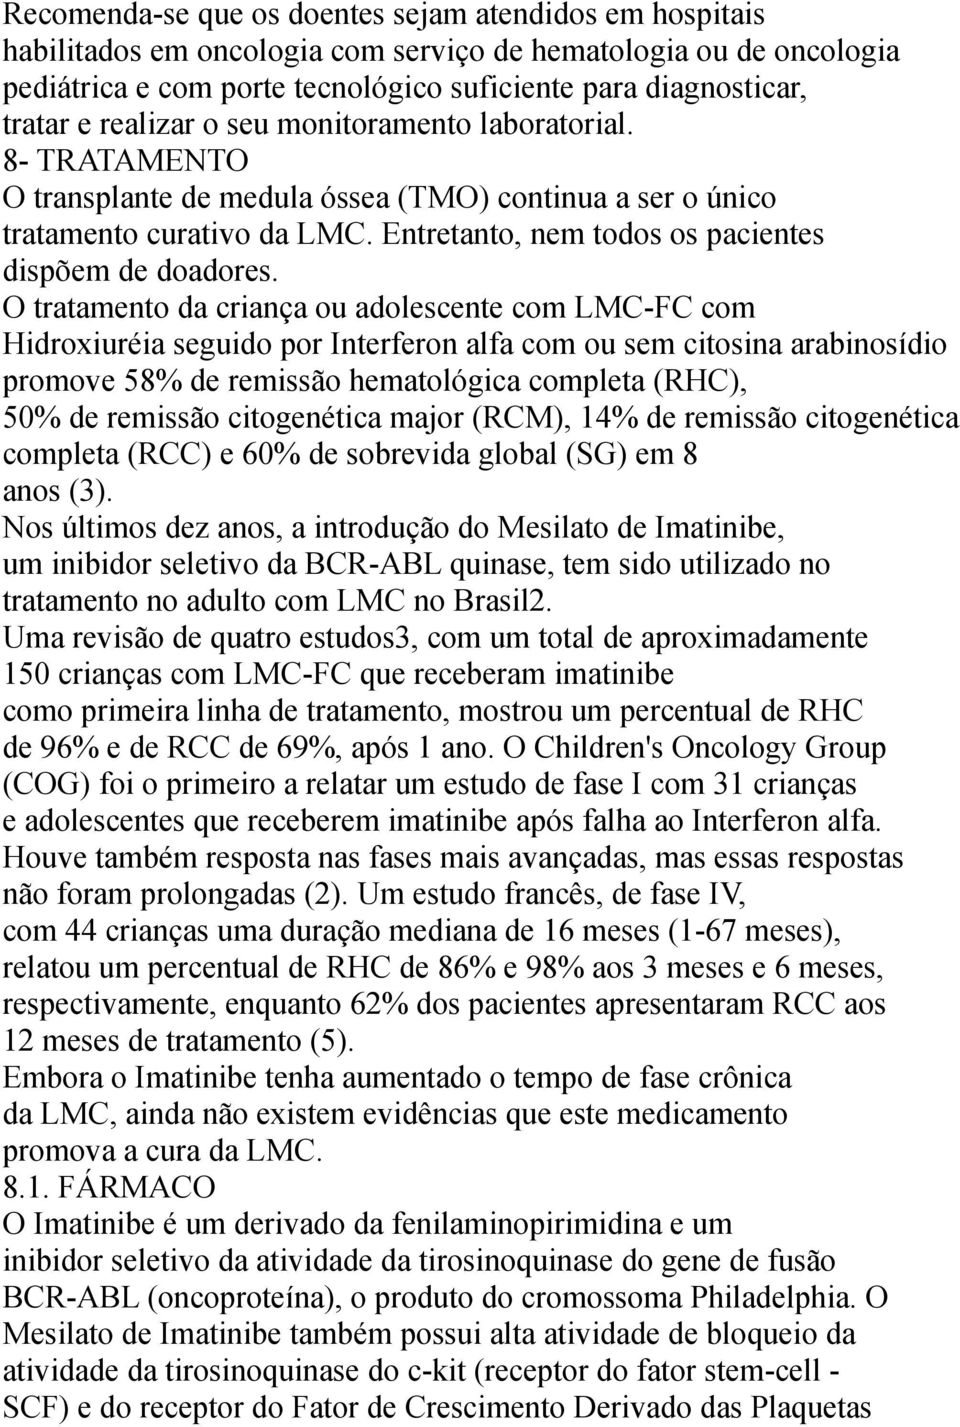 O tratamento da criança ou adolescente com LMC-FC com Hidroxiuréia seguido por Interferon alfa com ou sem citosina arabinosídio promove 58% de remissão hematológica completa (RHC), 50% de remissão